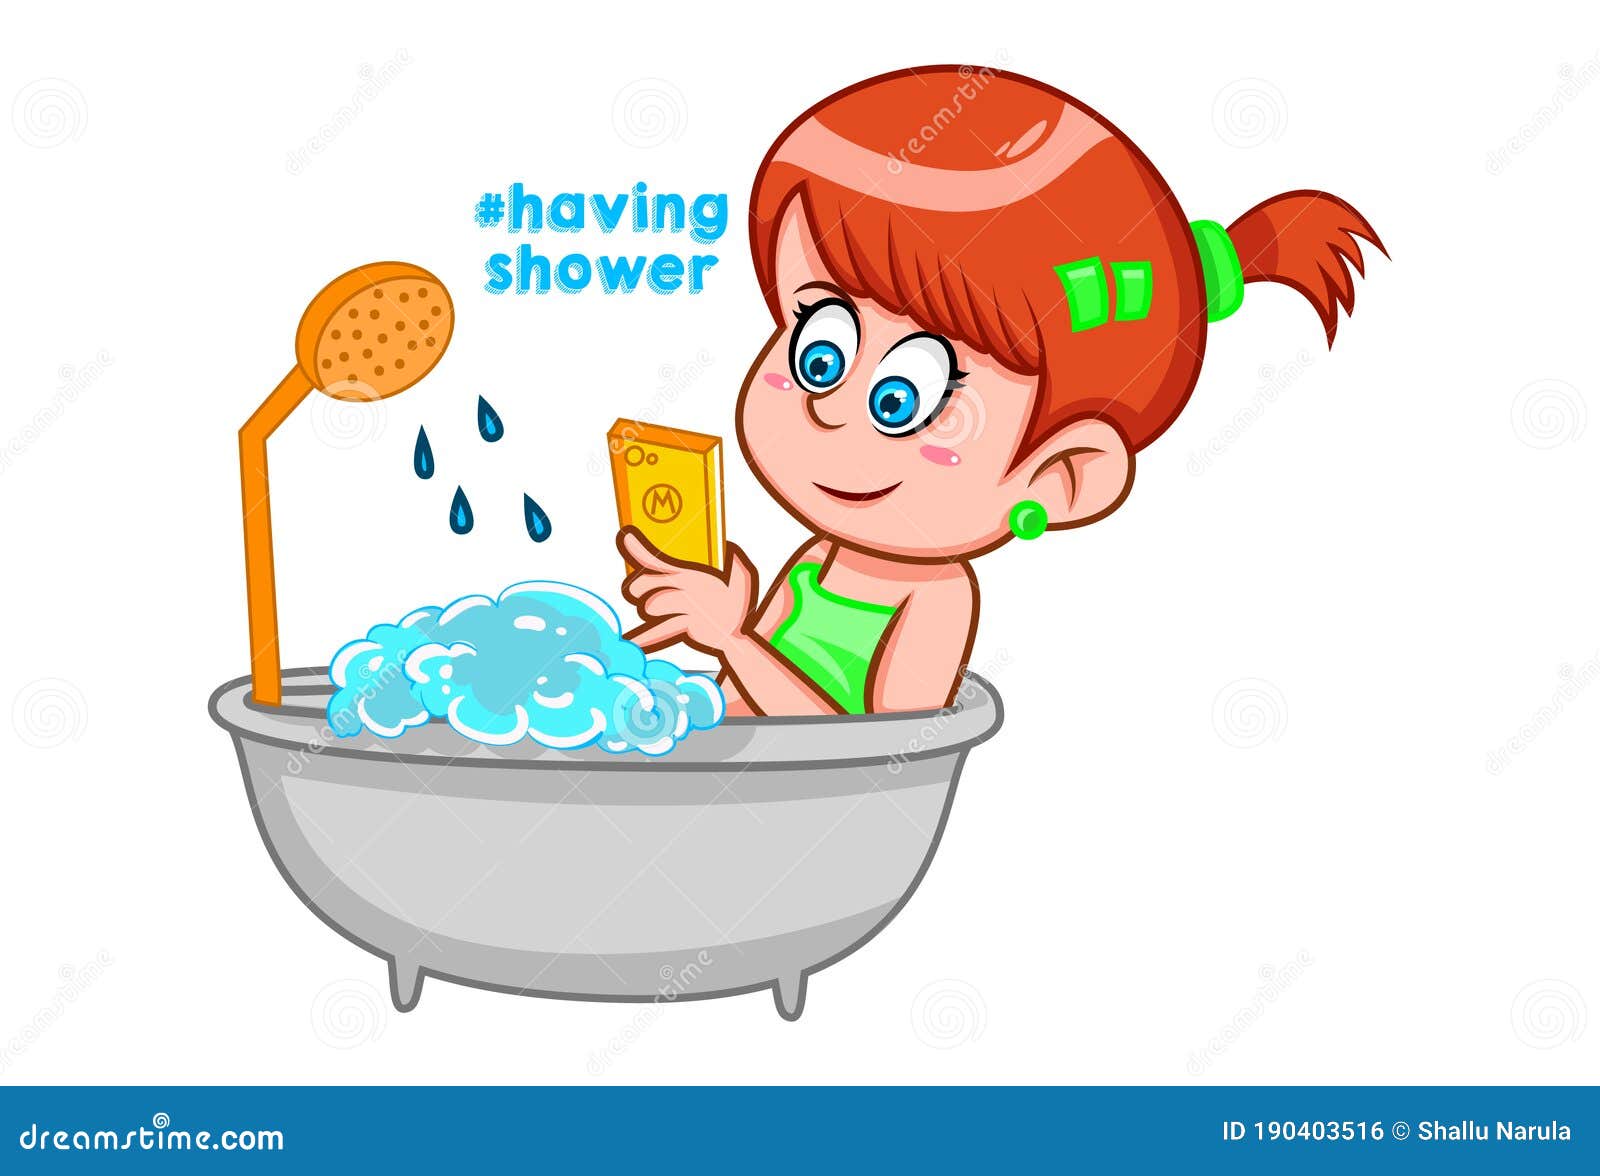 Cute Shaving Kit Cartoon Vector Illustration Motif Set. Hand Drawn ...